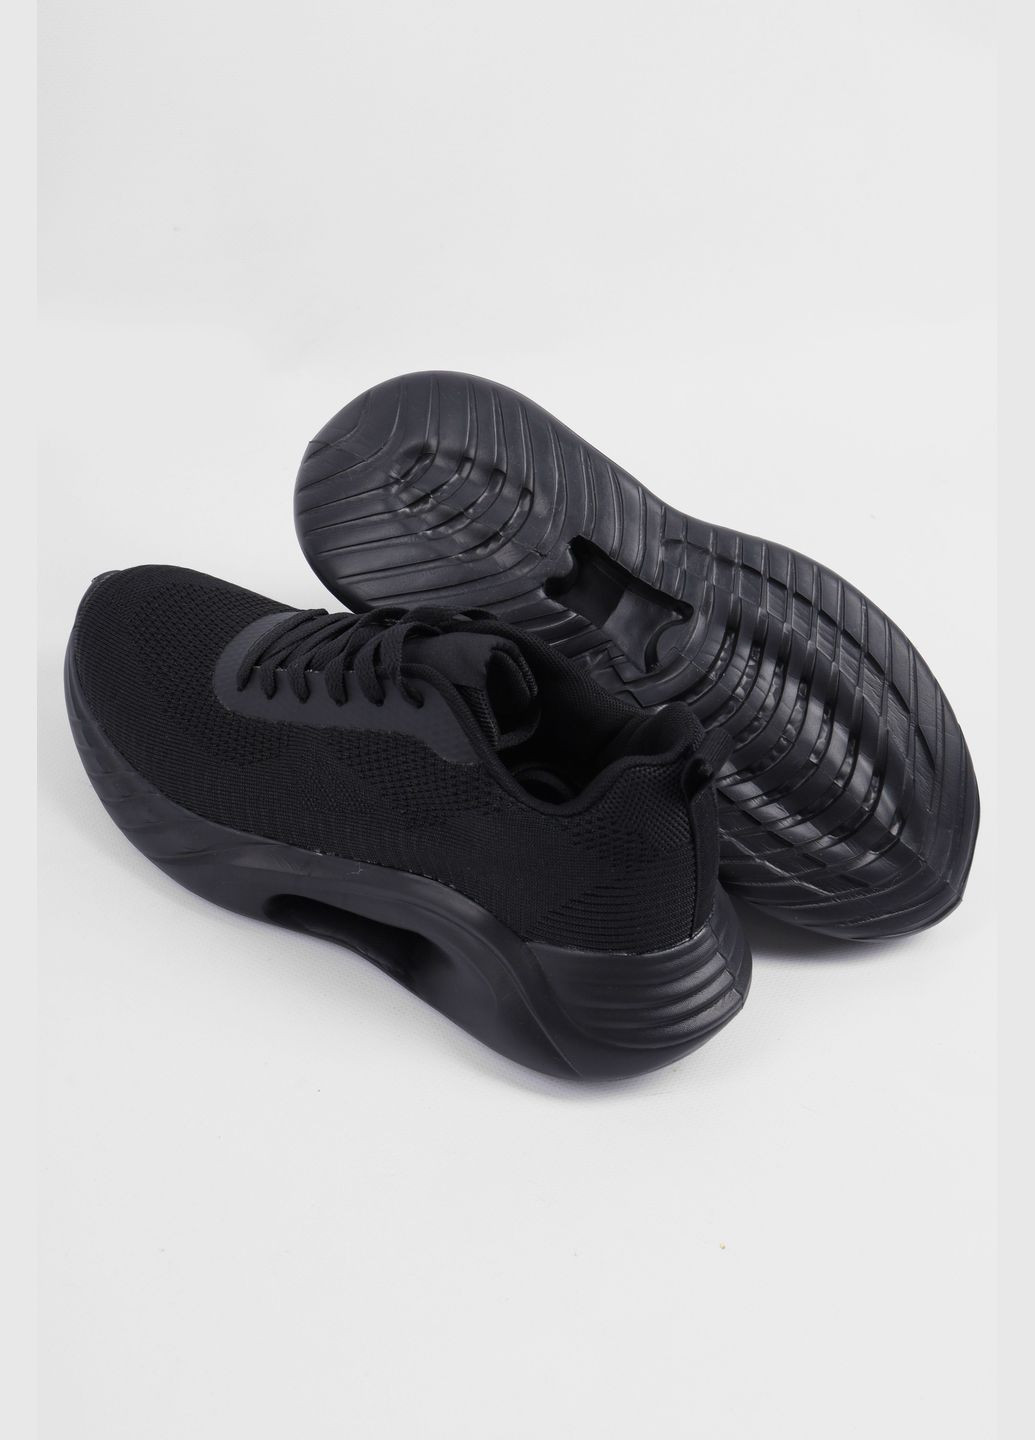 Чорні Осінні кросівки чоловічі чорного кольору на шнурівці Let's Shop